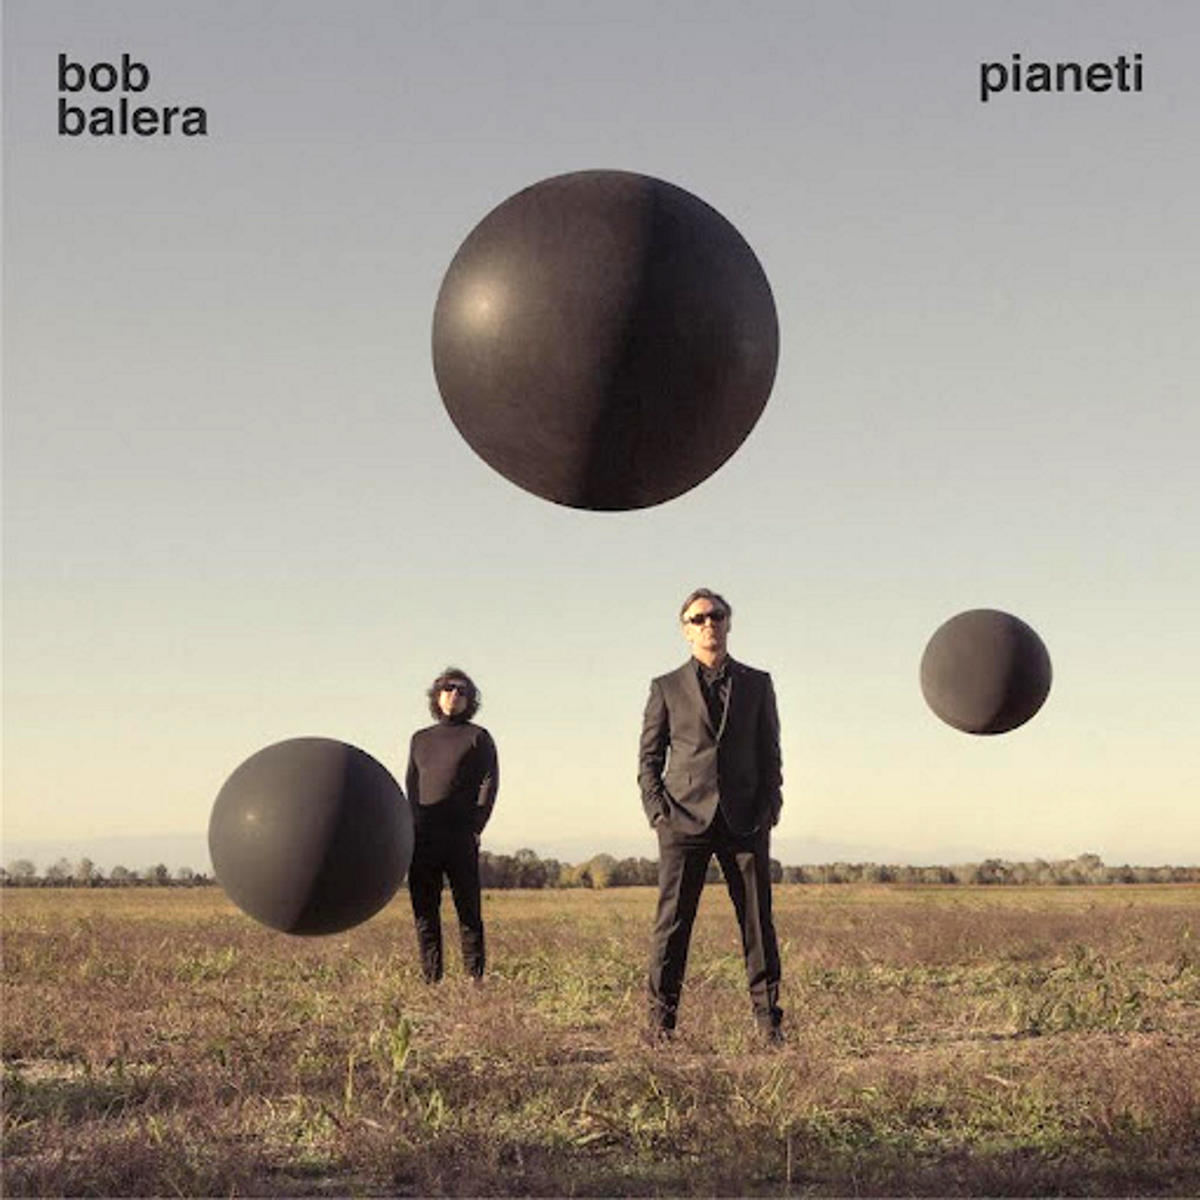 BOB BALERA, “Pianeti” è il nuovo album del duo veneto che mescola rock e cantautorato italiano degli anni '70/'80